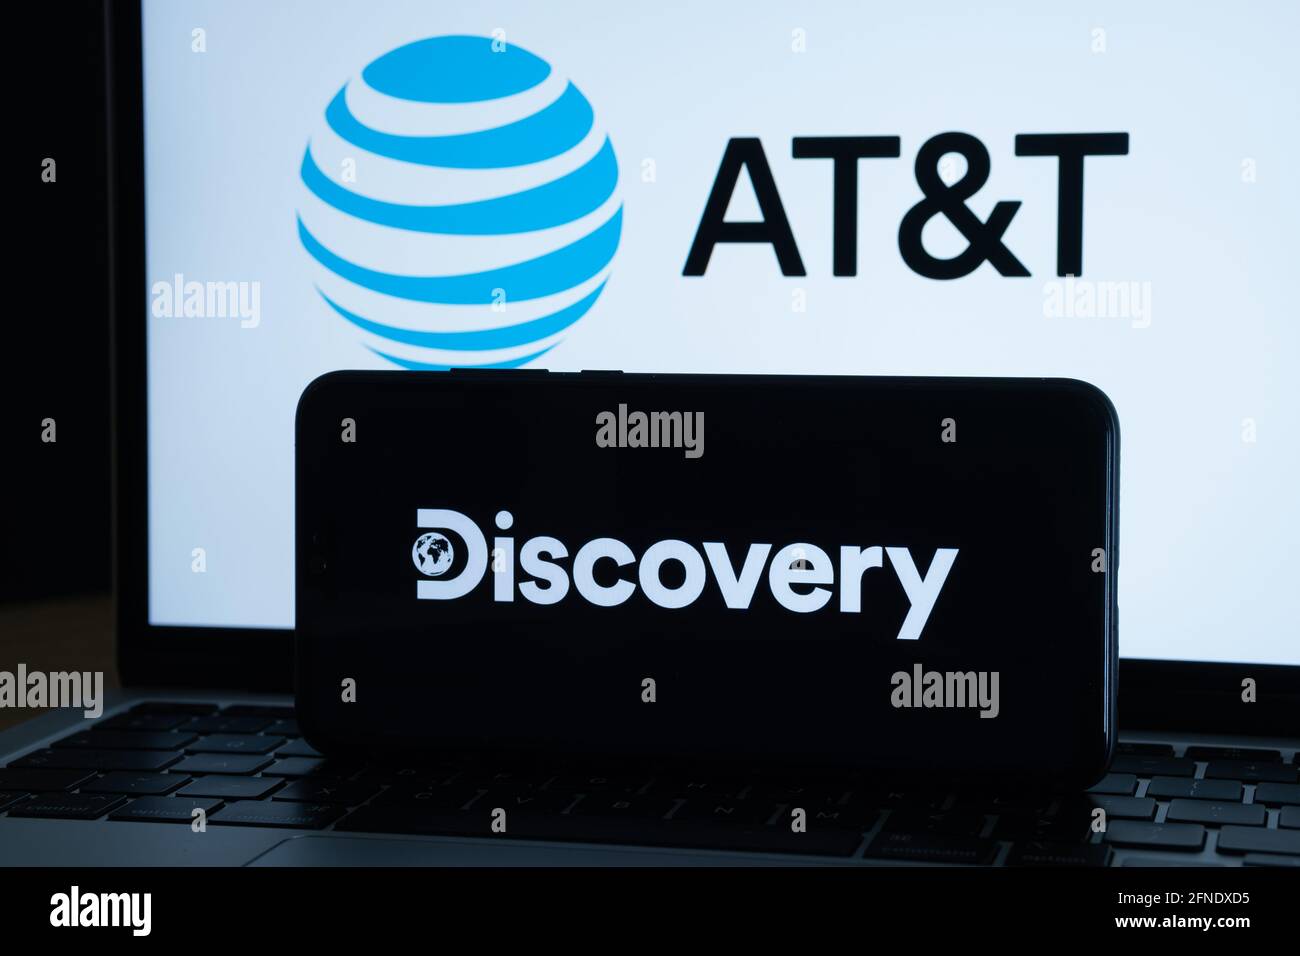 Concetto di fusione di Discovery e AT&T. Logo Discovery visualizzato sullo smartphone scuro e LOGO AT&T sullo schermo del notebook sfocato sul retro. Staffor, Re Unito Foto Stock